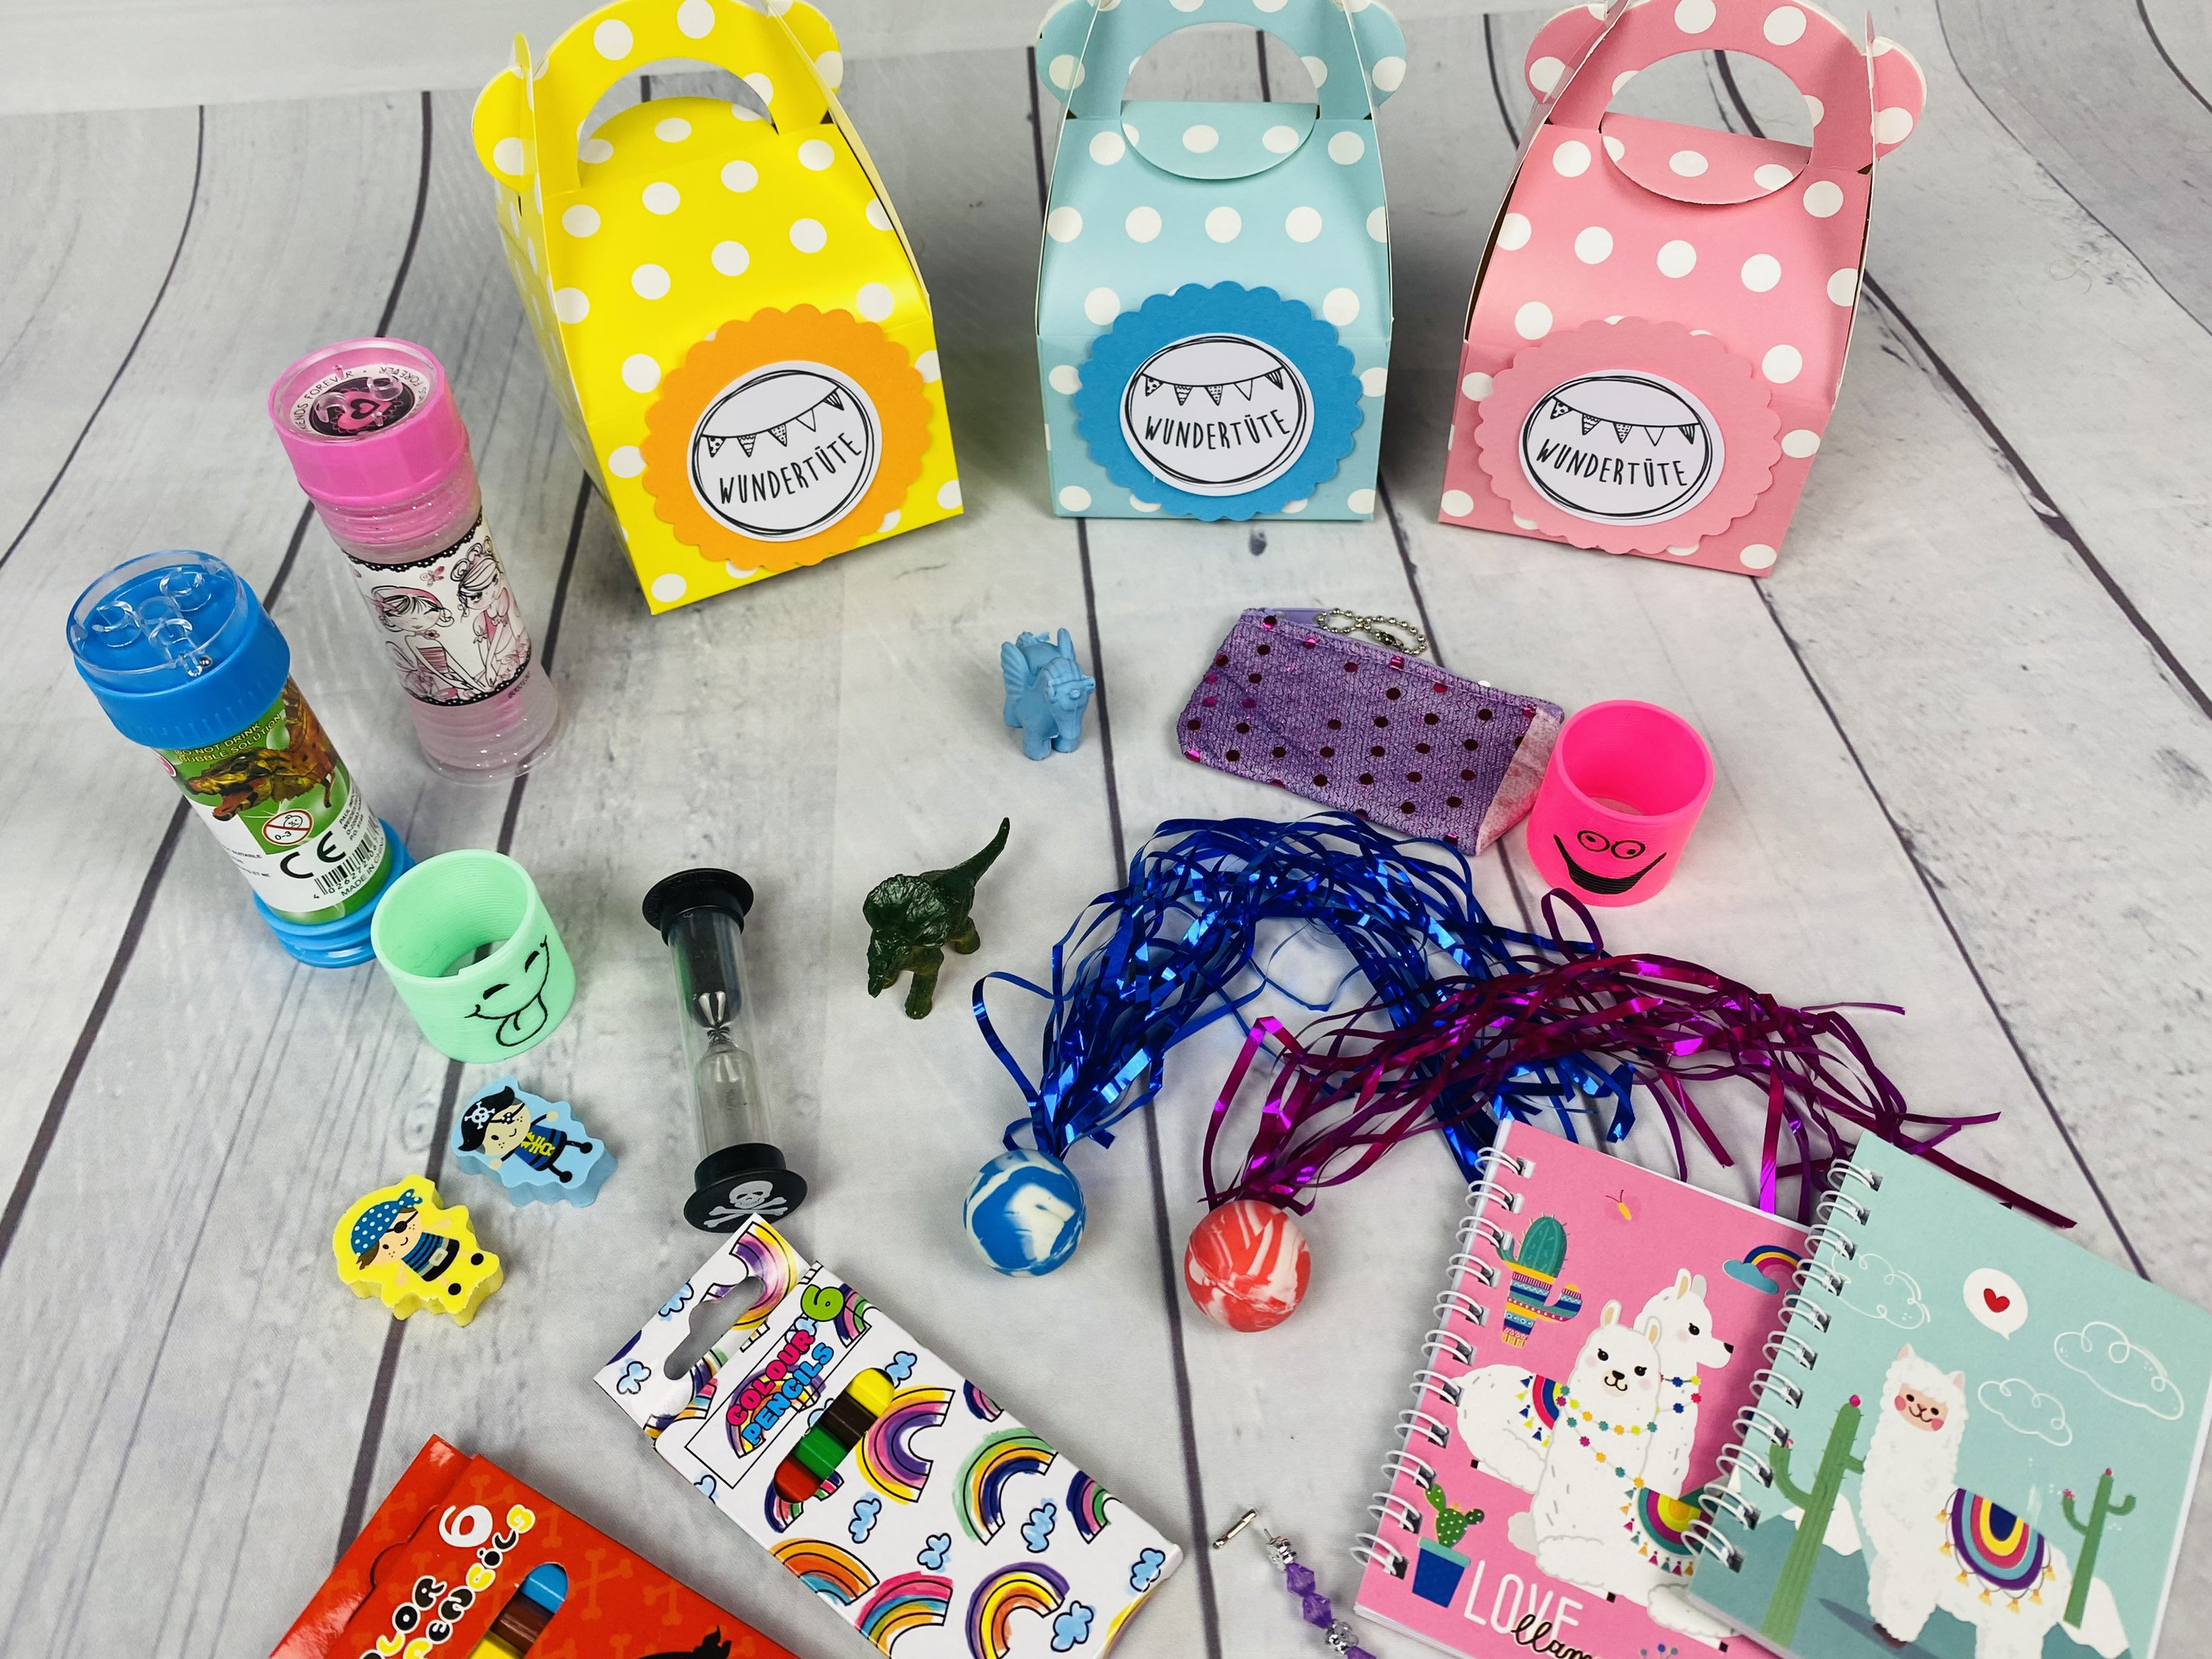 Relota 50 piezas bolsas de Regalo cumpleaños infantil para niños